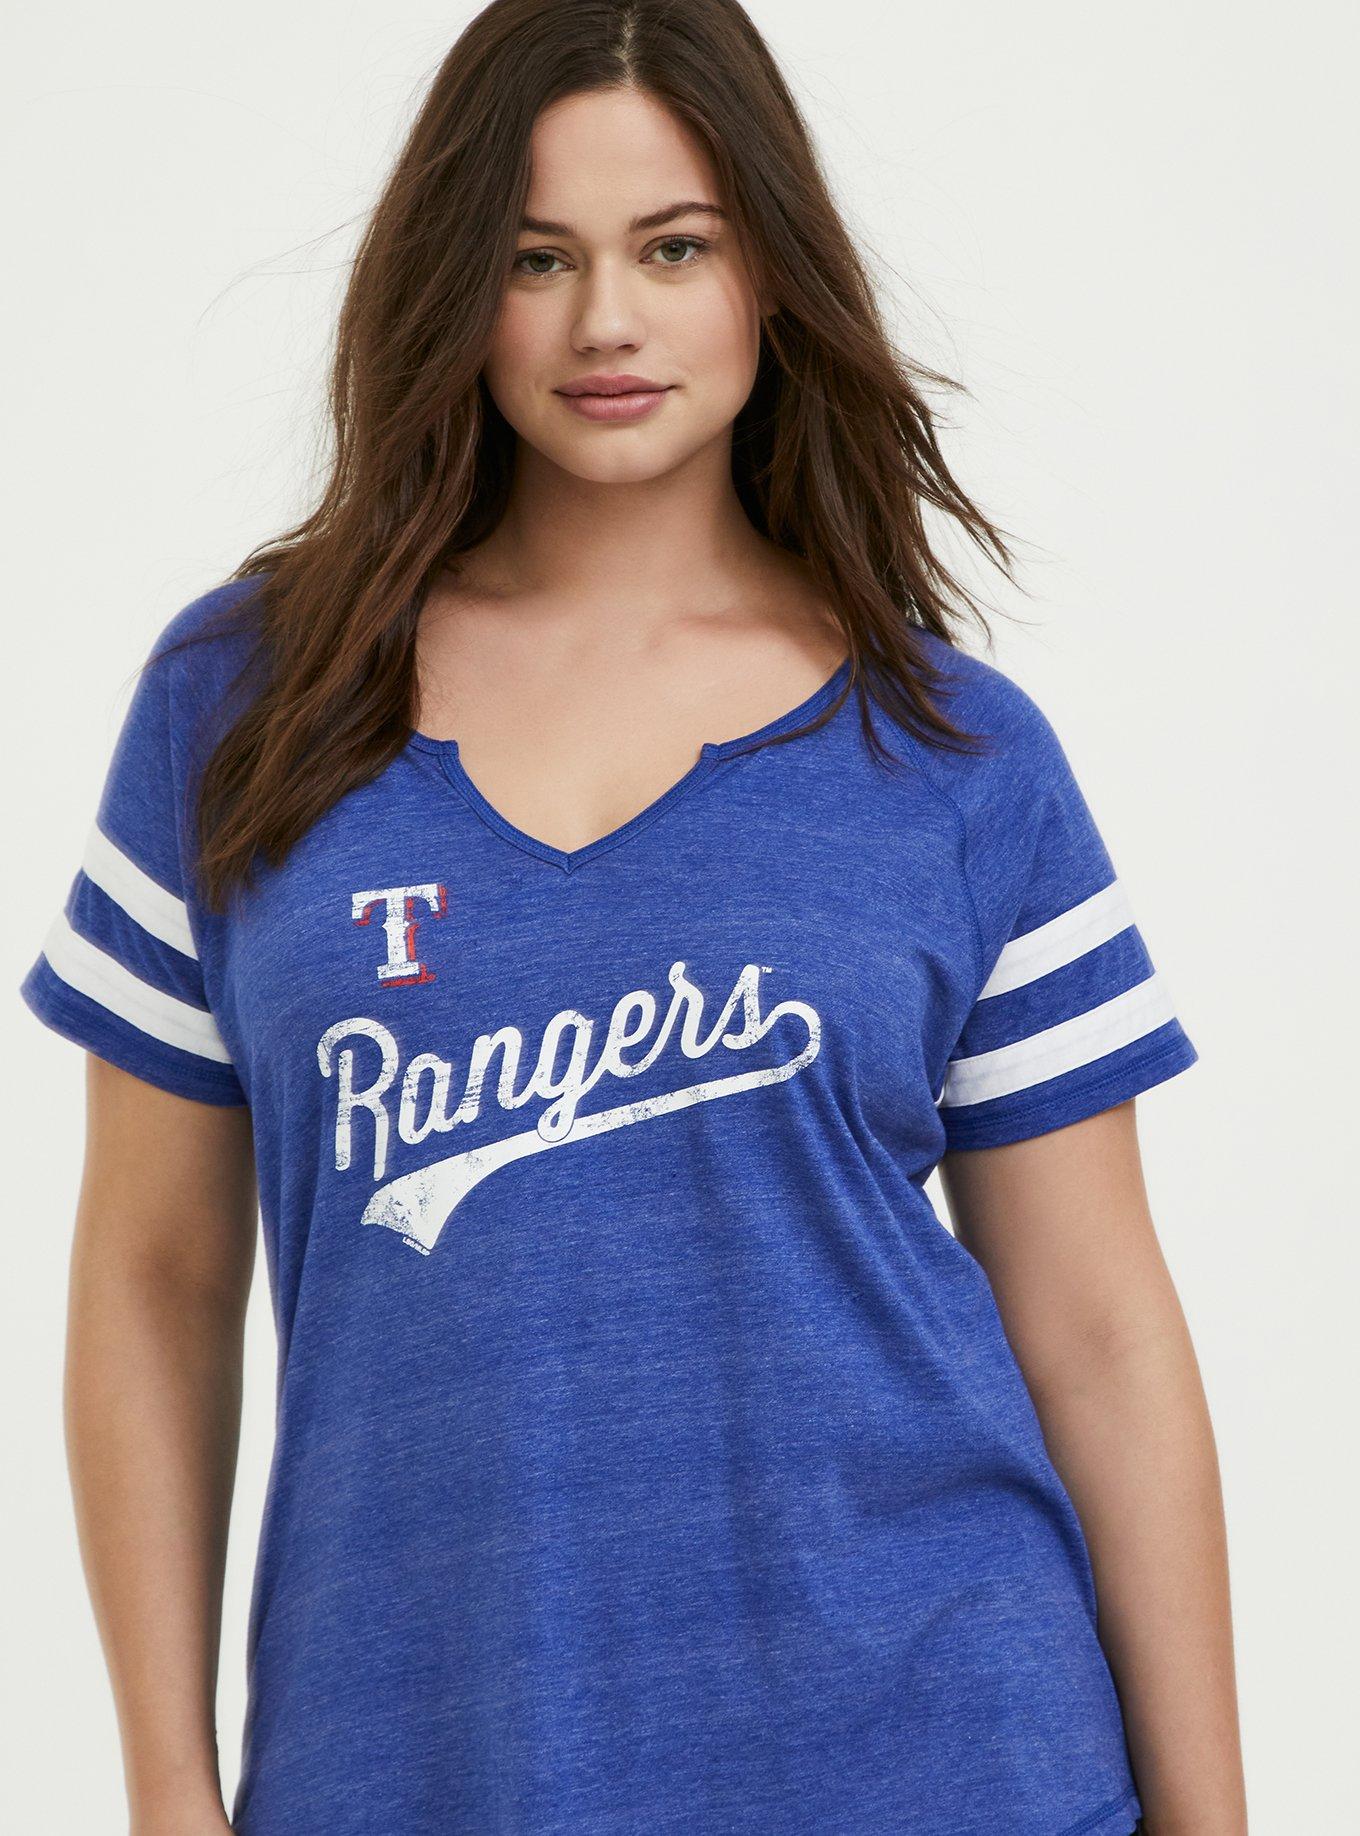 texas rangers jersey women